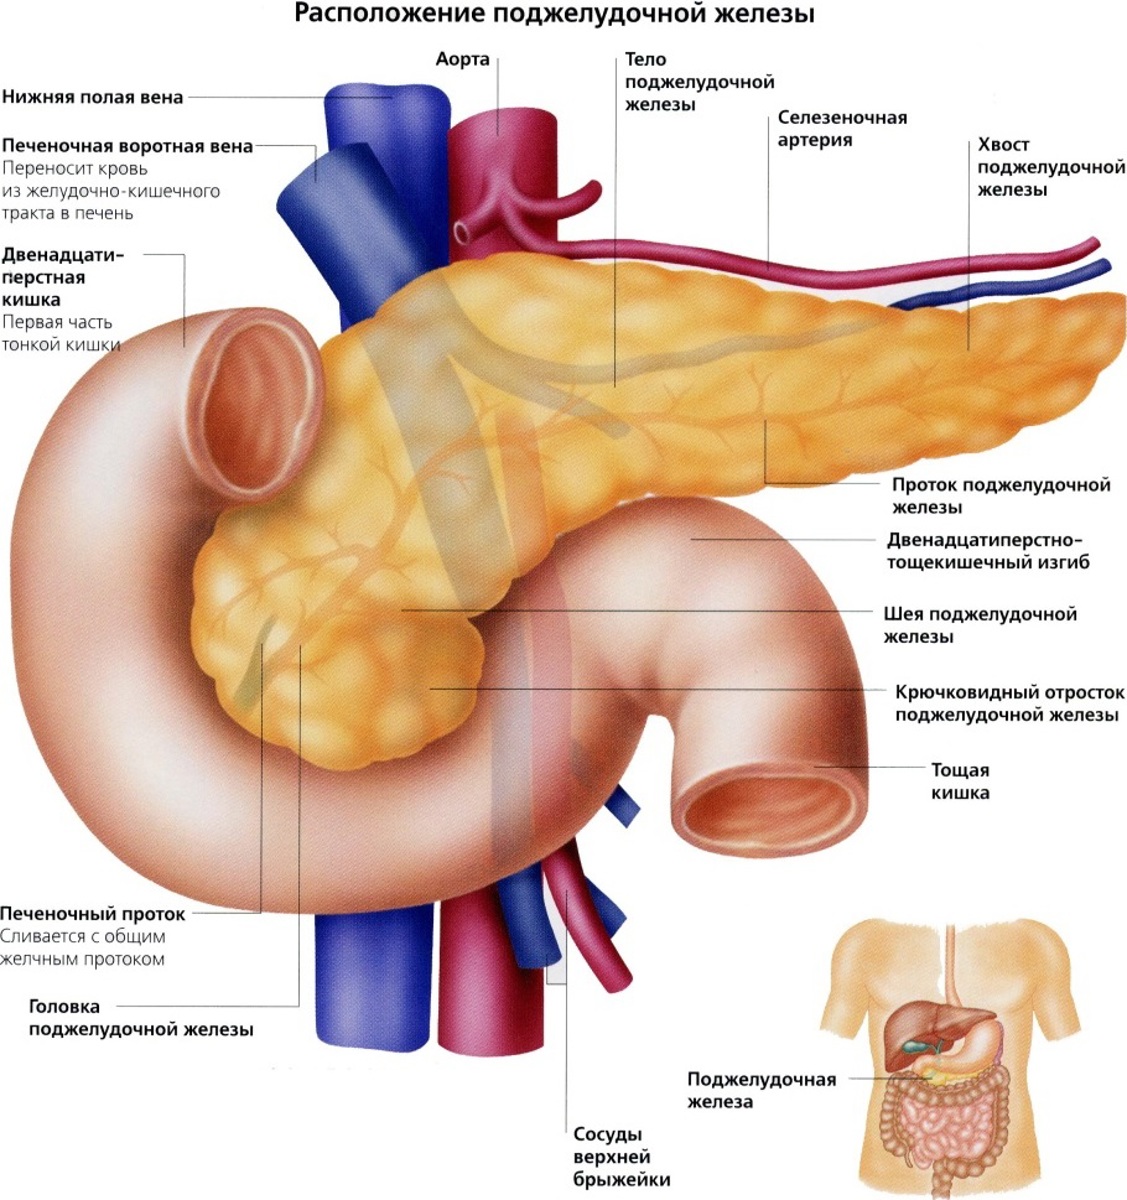 Где поджелудок. Поджелудочная железа анатомия человека. Анатомия поджелудочная железа расположение. Вена поджелудочной железы. Анатомическое расположение поджелудочной железы.